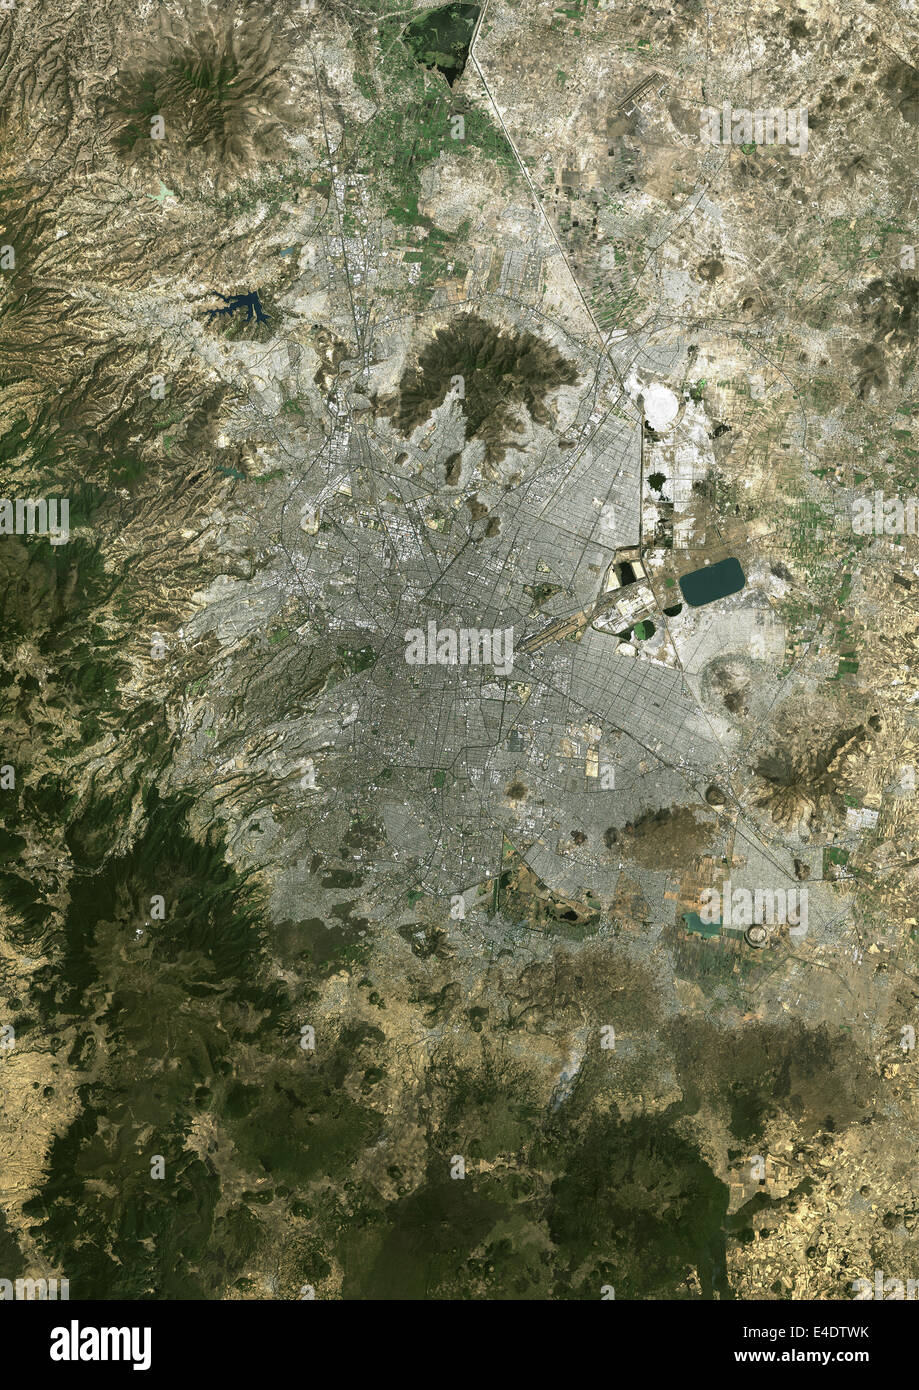 La ville de Mexico, Mexique, True Color Image satellite. La ville de Mexico, Mexique. La couleur vraie image satellite de la ville de Mexico, la capitale c Banque D'Images